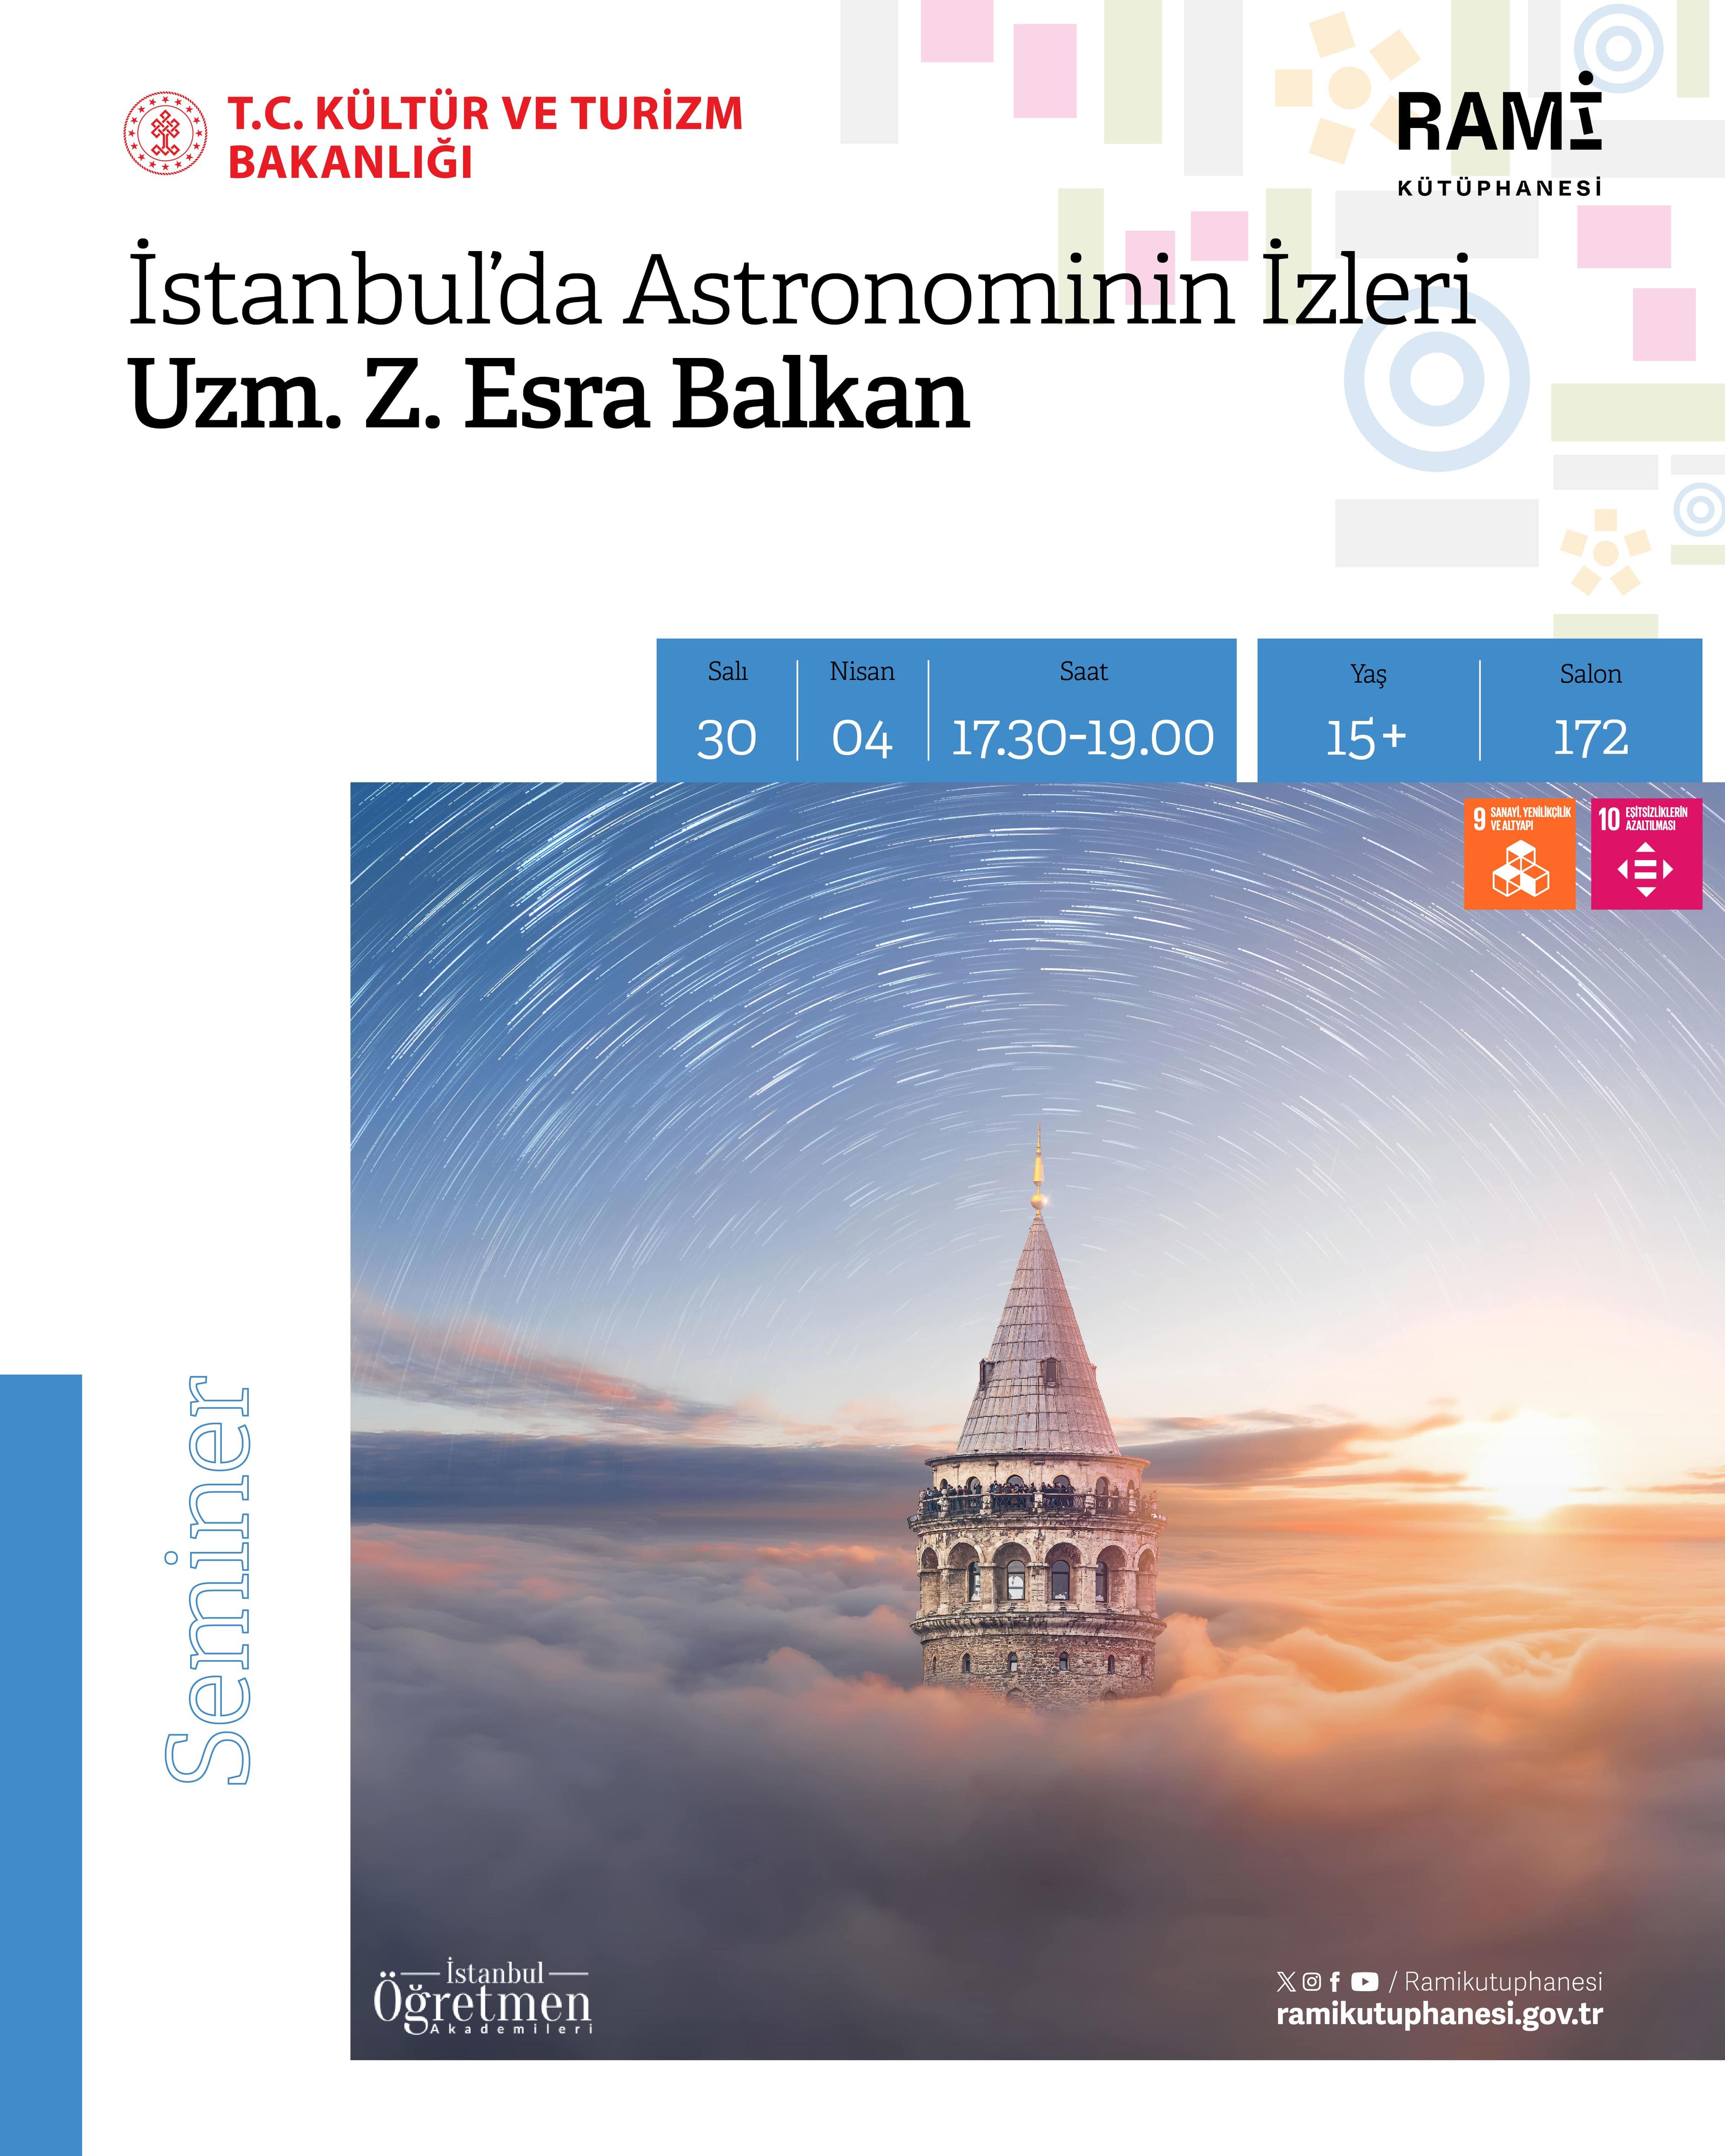 İstanbul’da Astronominin İzleri (Uzm. Z. Esra Balkan)